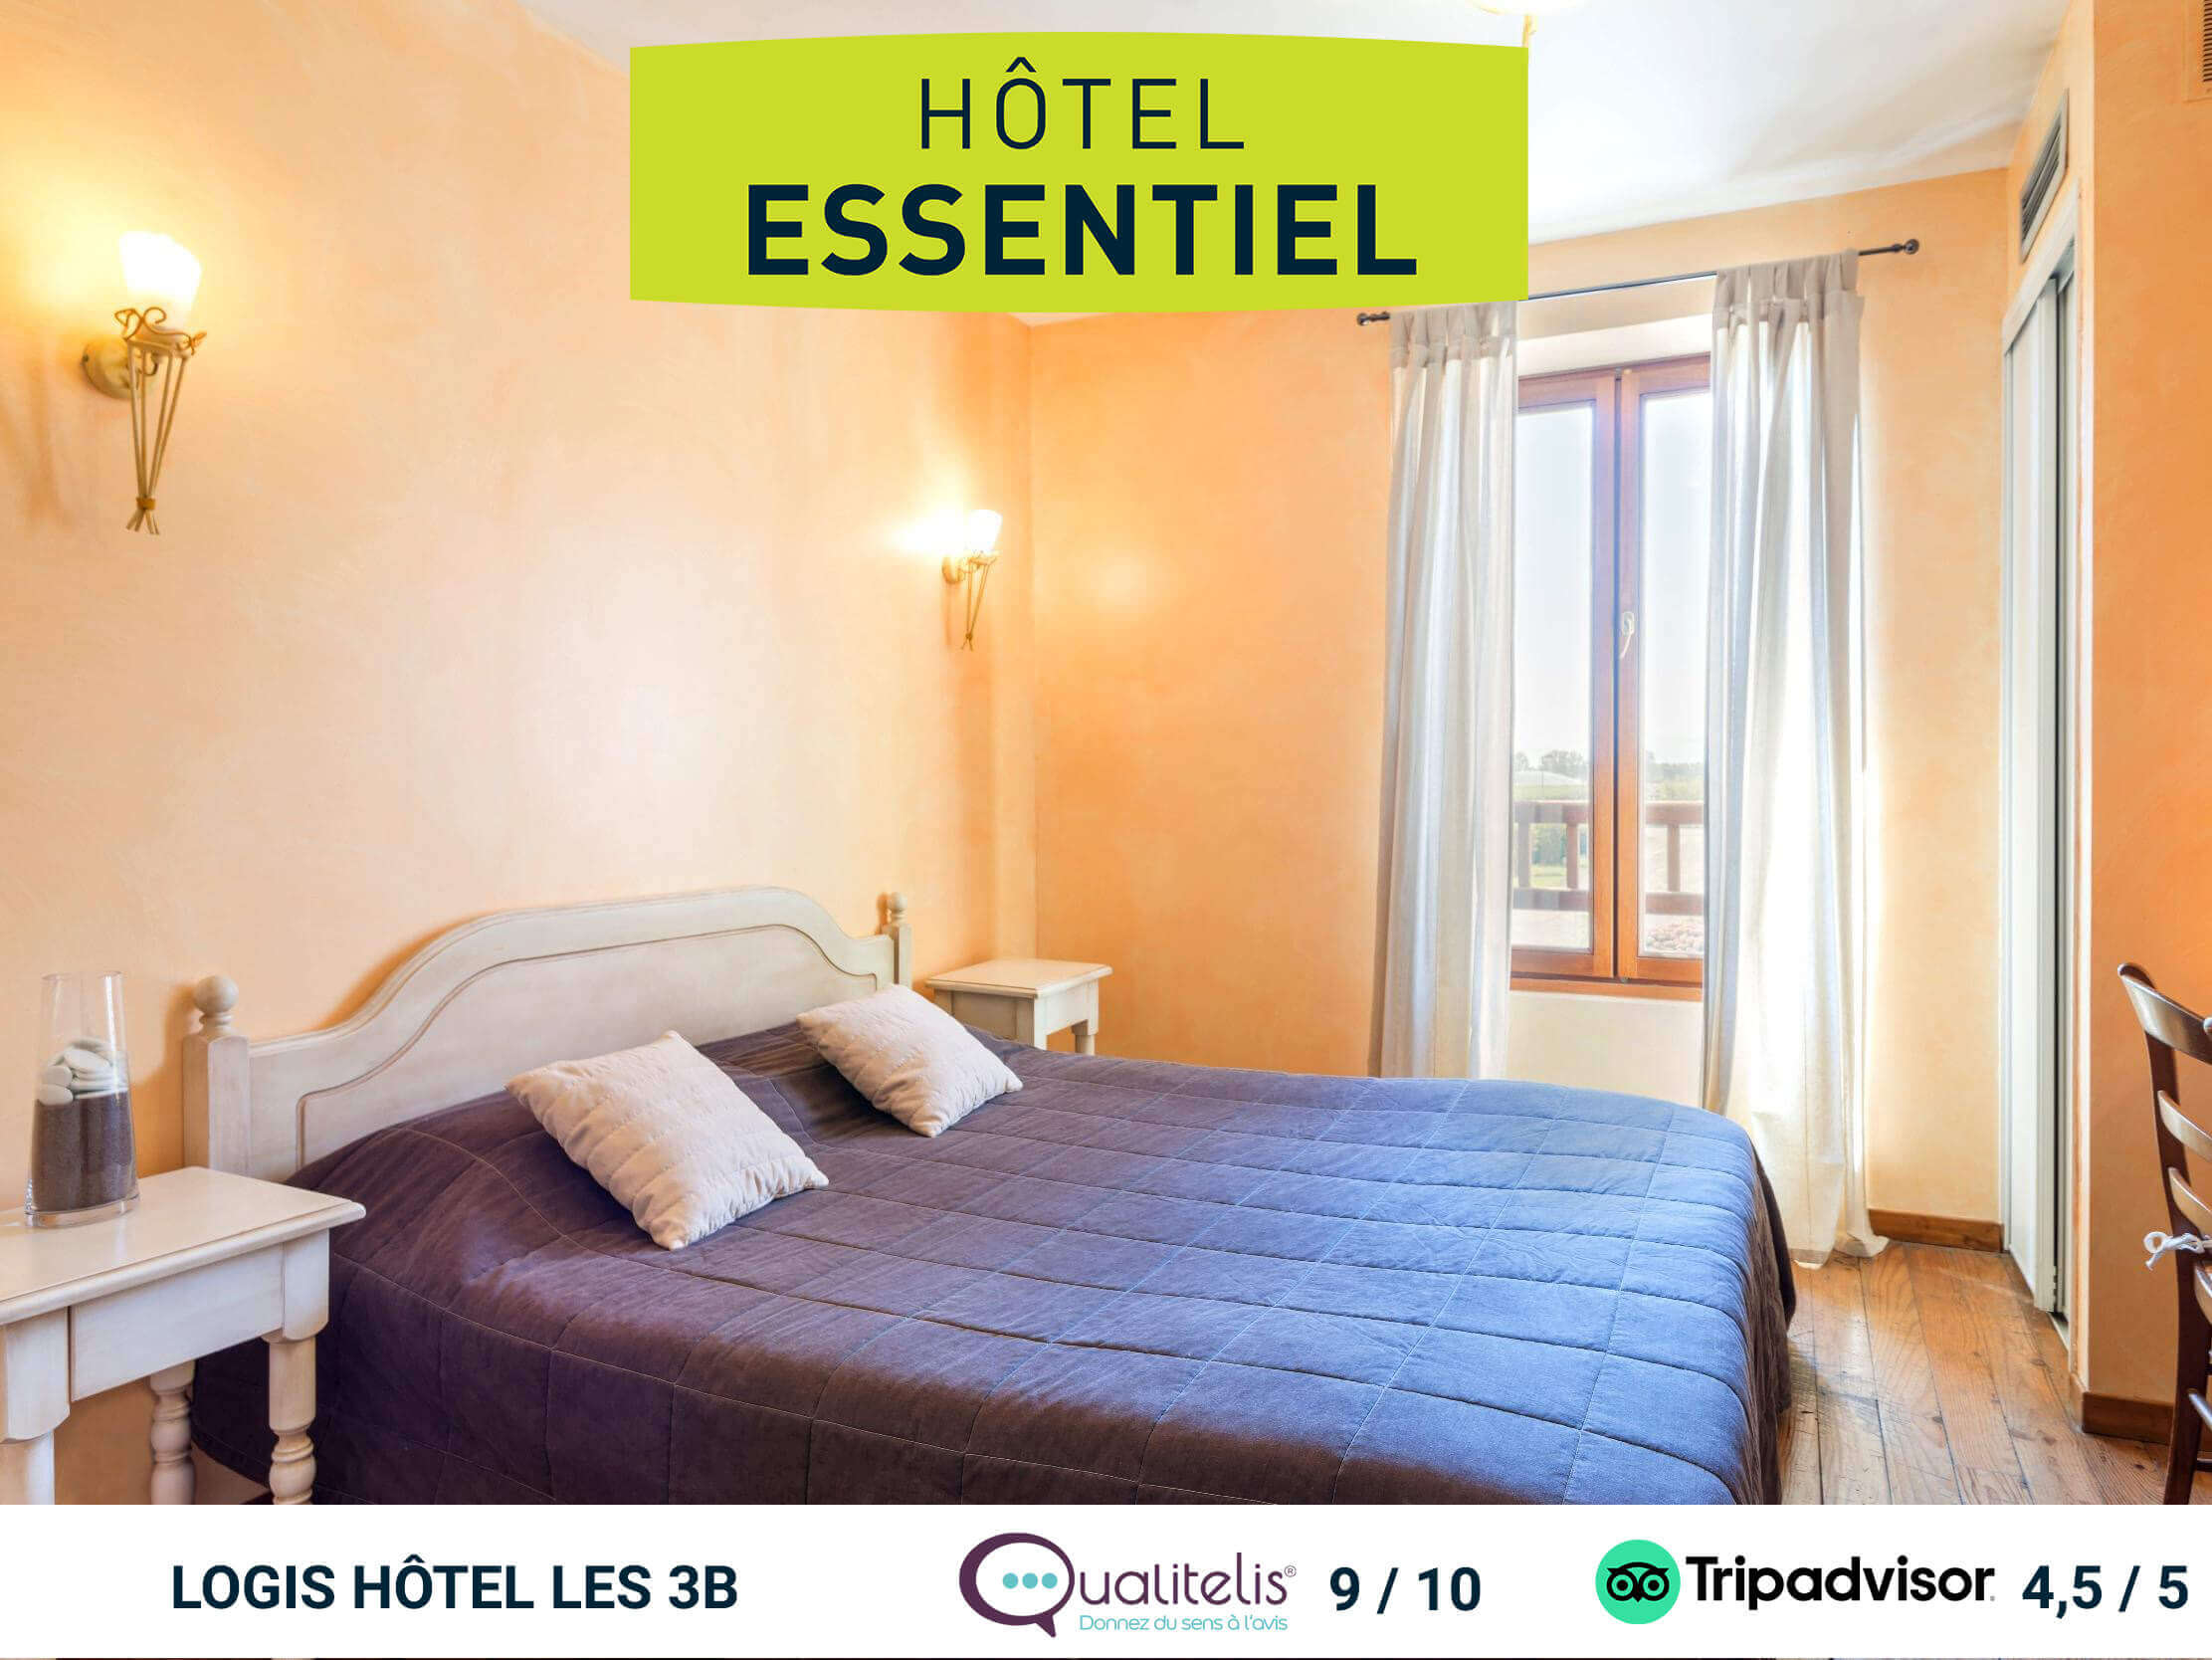 Hôtel Essentiel : LE CONFORT ET LA QUALITÉ LOGIS AU MEILLEUR PRIX.